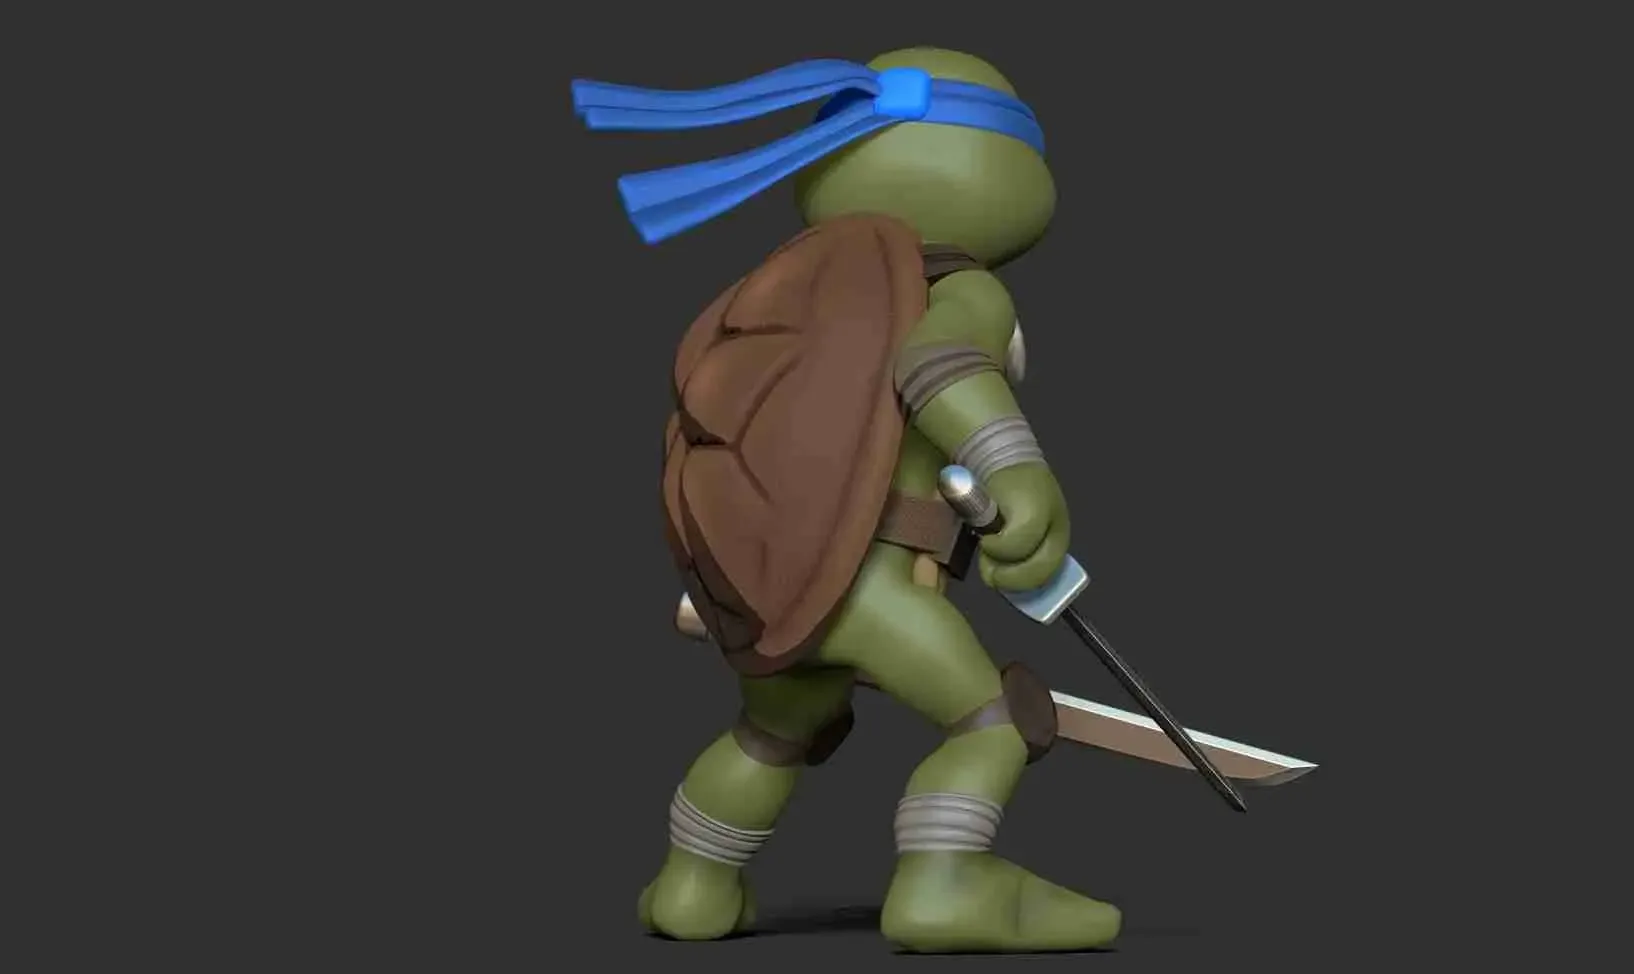 Leonardo - Teenage Mutant Ninja Turtles